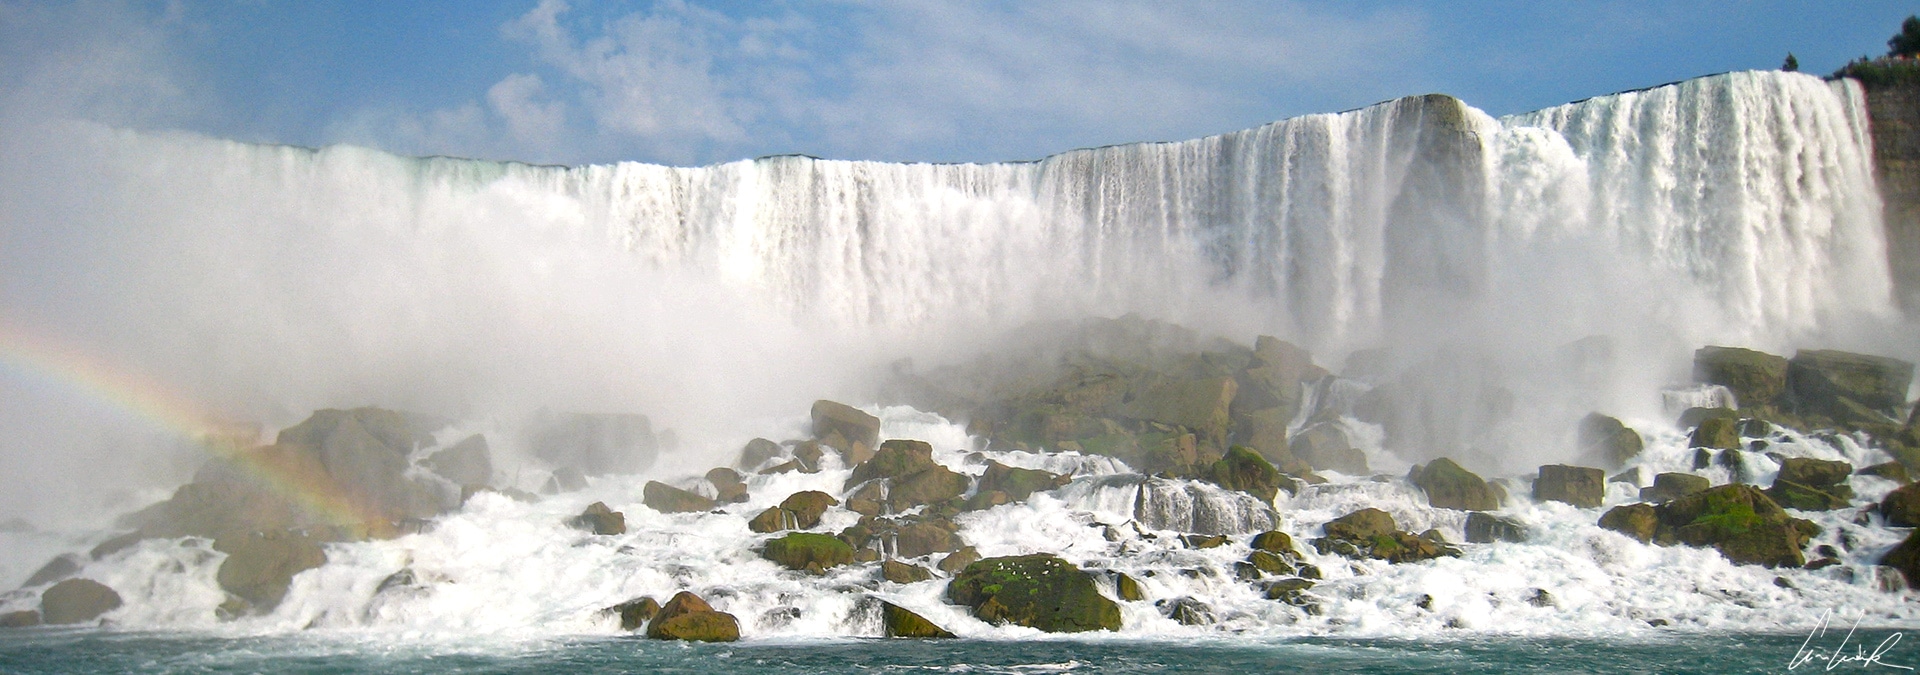 Niagara Falls, a Natural Wonder between the United States and Canada